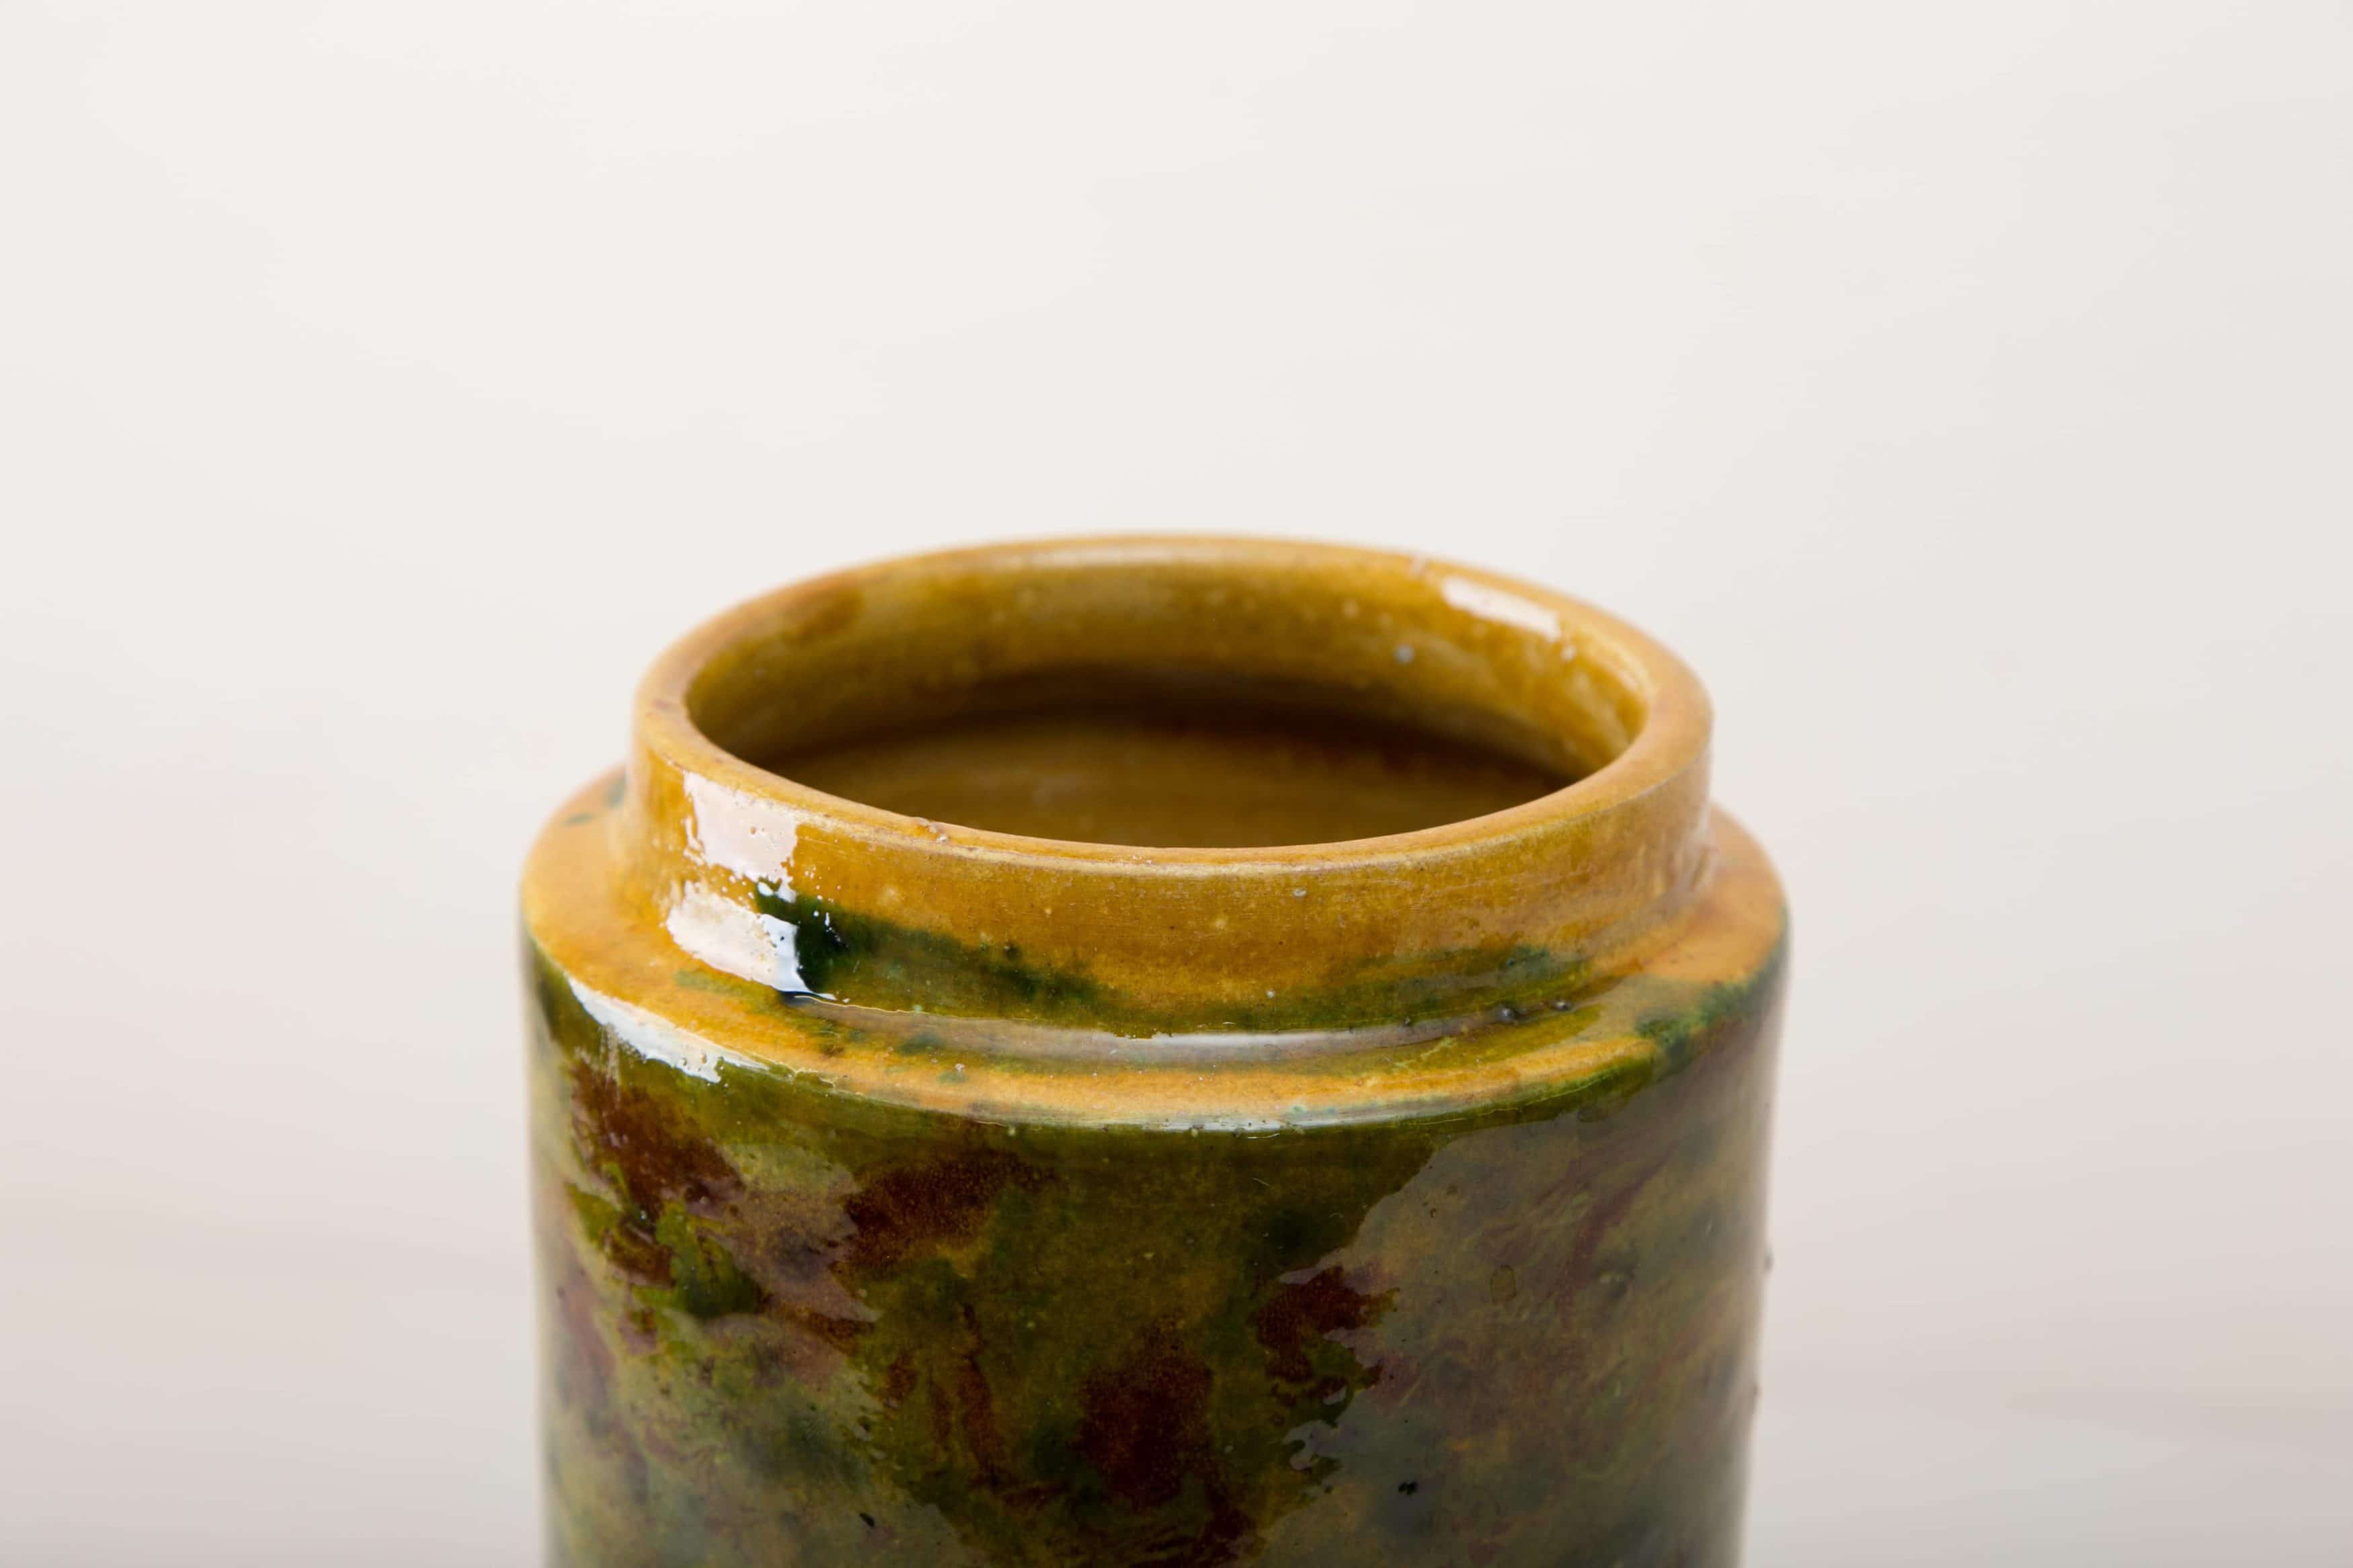 Diese besonderen Vasen der Serie Punca sind ganz individuell und interessant gefärbt. Gemeinsam geben sie ein harmonisches Bild ab und sehen zu Herbst wie Sommerevents gleichermaßen gut aus. Ob als Vase für einen tollen Herbst- oder Kornblumenstrauß oder aber als Süßigkeitendose auf dem Buffettisch– Vase Punca ist abwechslungsreich und mal "etwas anderes". Grün marmorierte Keramik, die alte Technik der Marmorglasur ist in Süditalien sehr beliebt. Die zylindrischen Vorratsgefässe stammen aus den 1930er Jahren und es wurden darin Antipasti oder Oliven gelagert. Nun gut gereinigt kannst Du die Gefäße als Vase für Dein Eventstyling oder Hochzeitsdekoration einsetzen.